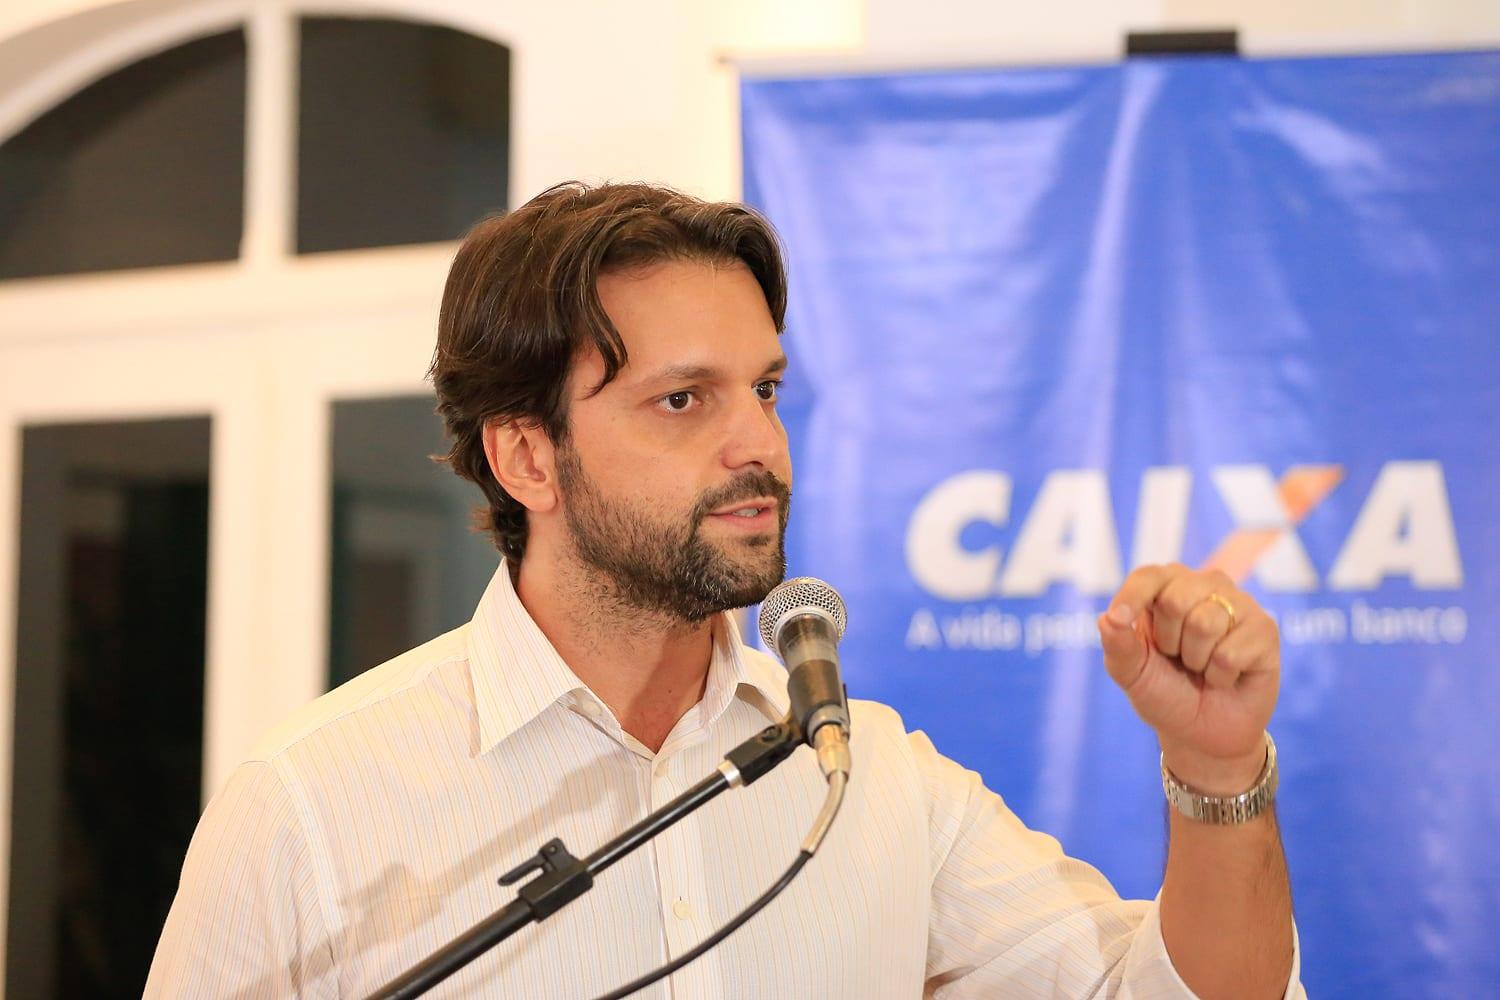 Ministro Baldy anuncia construção de casas em Goiânia e libera R$ 20 milhões para Aparecida